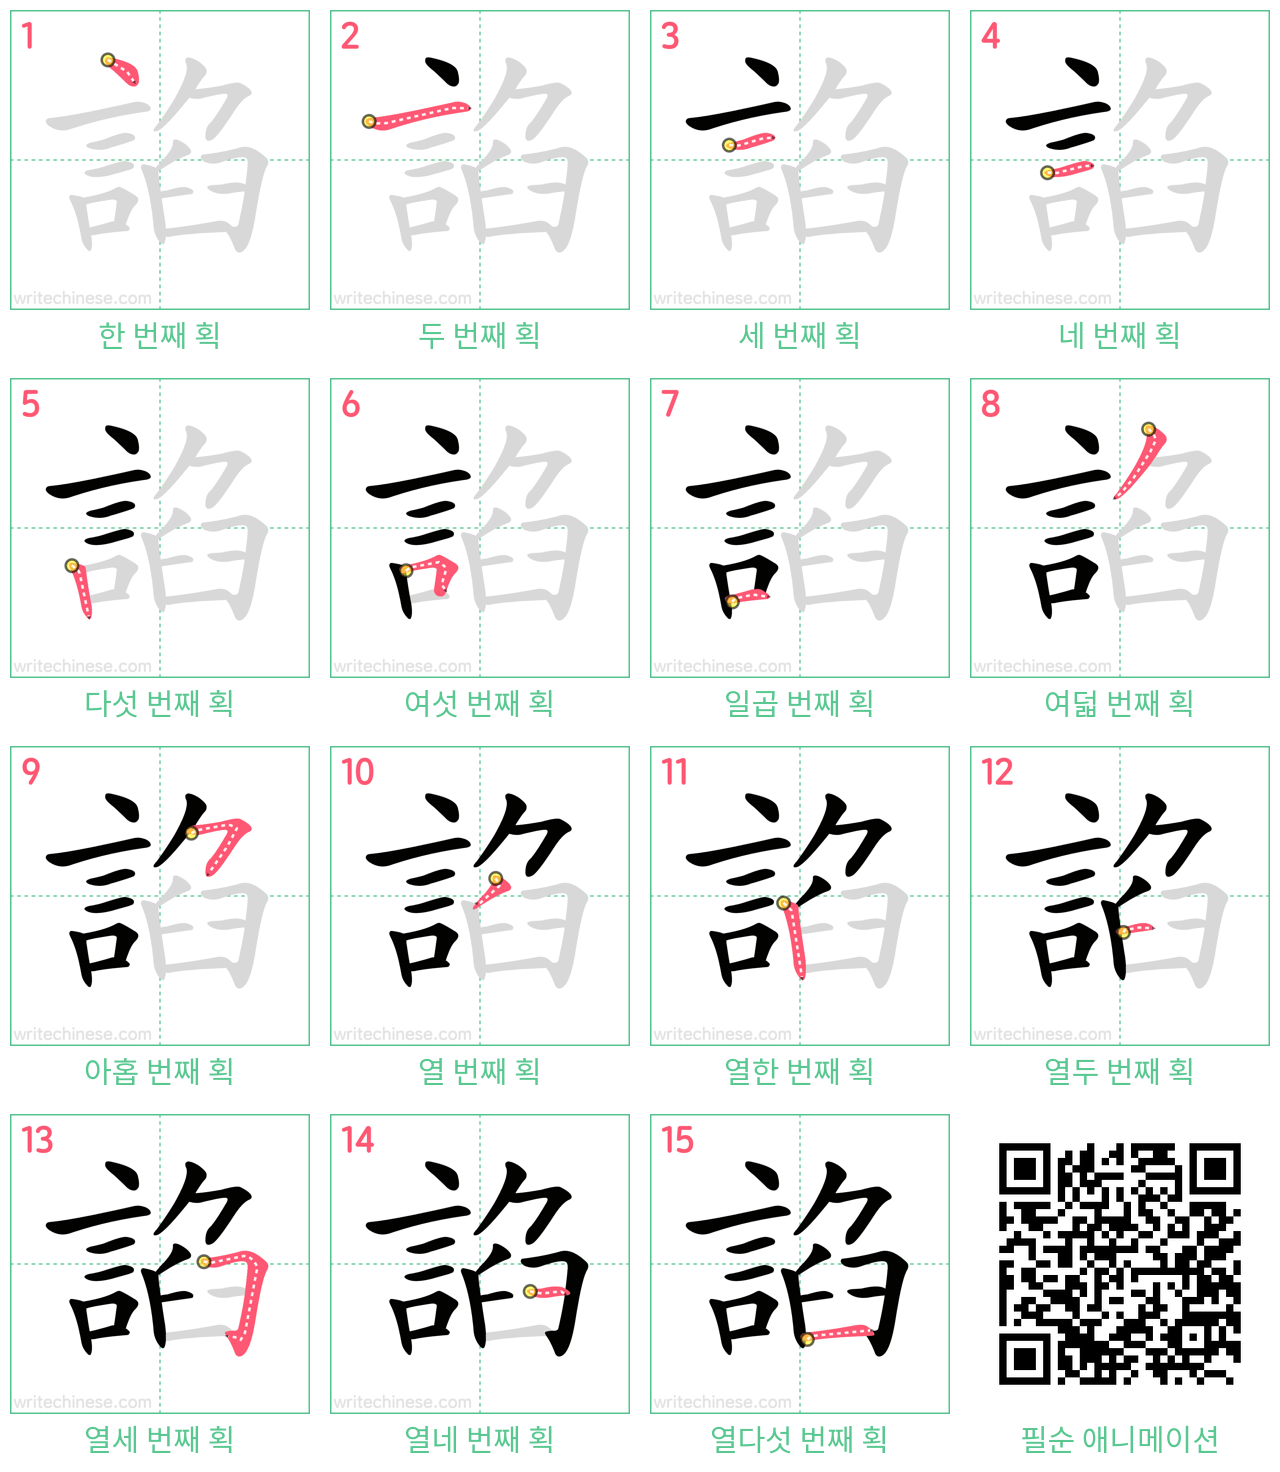 諂 step-by-step stroke order diagrams